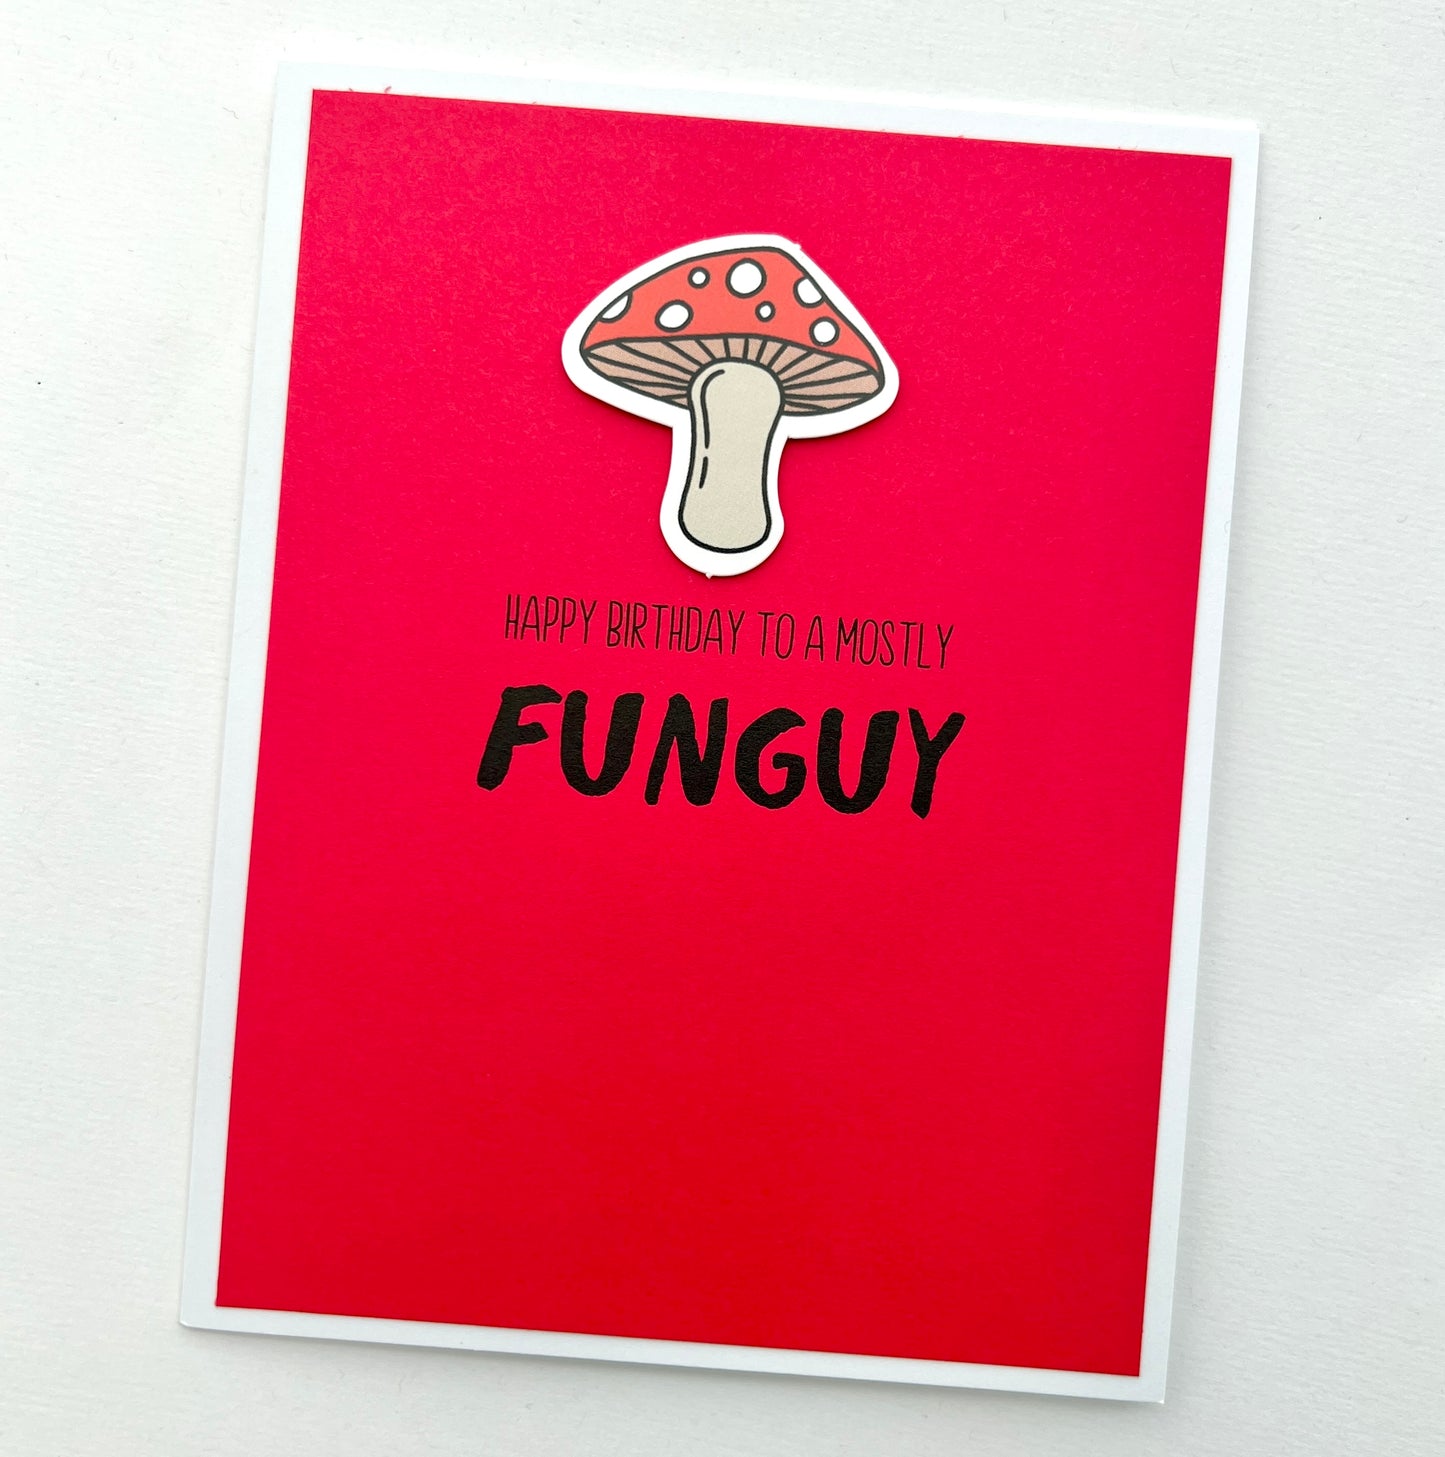 Mostly Funguy mushroom card